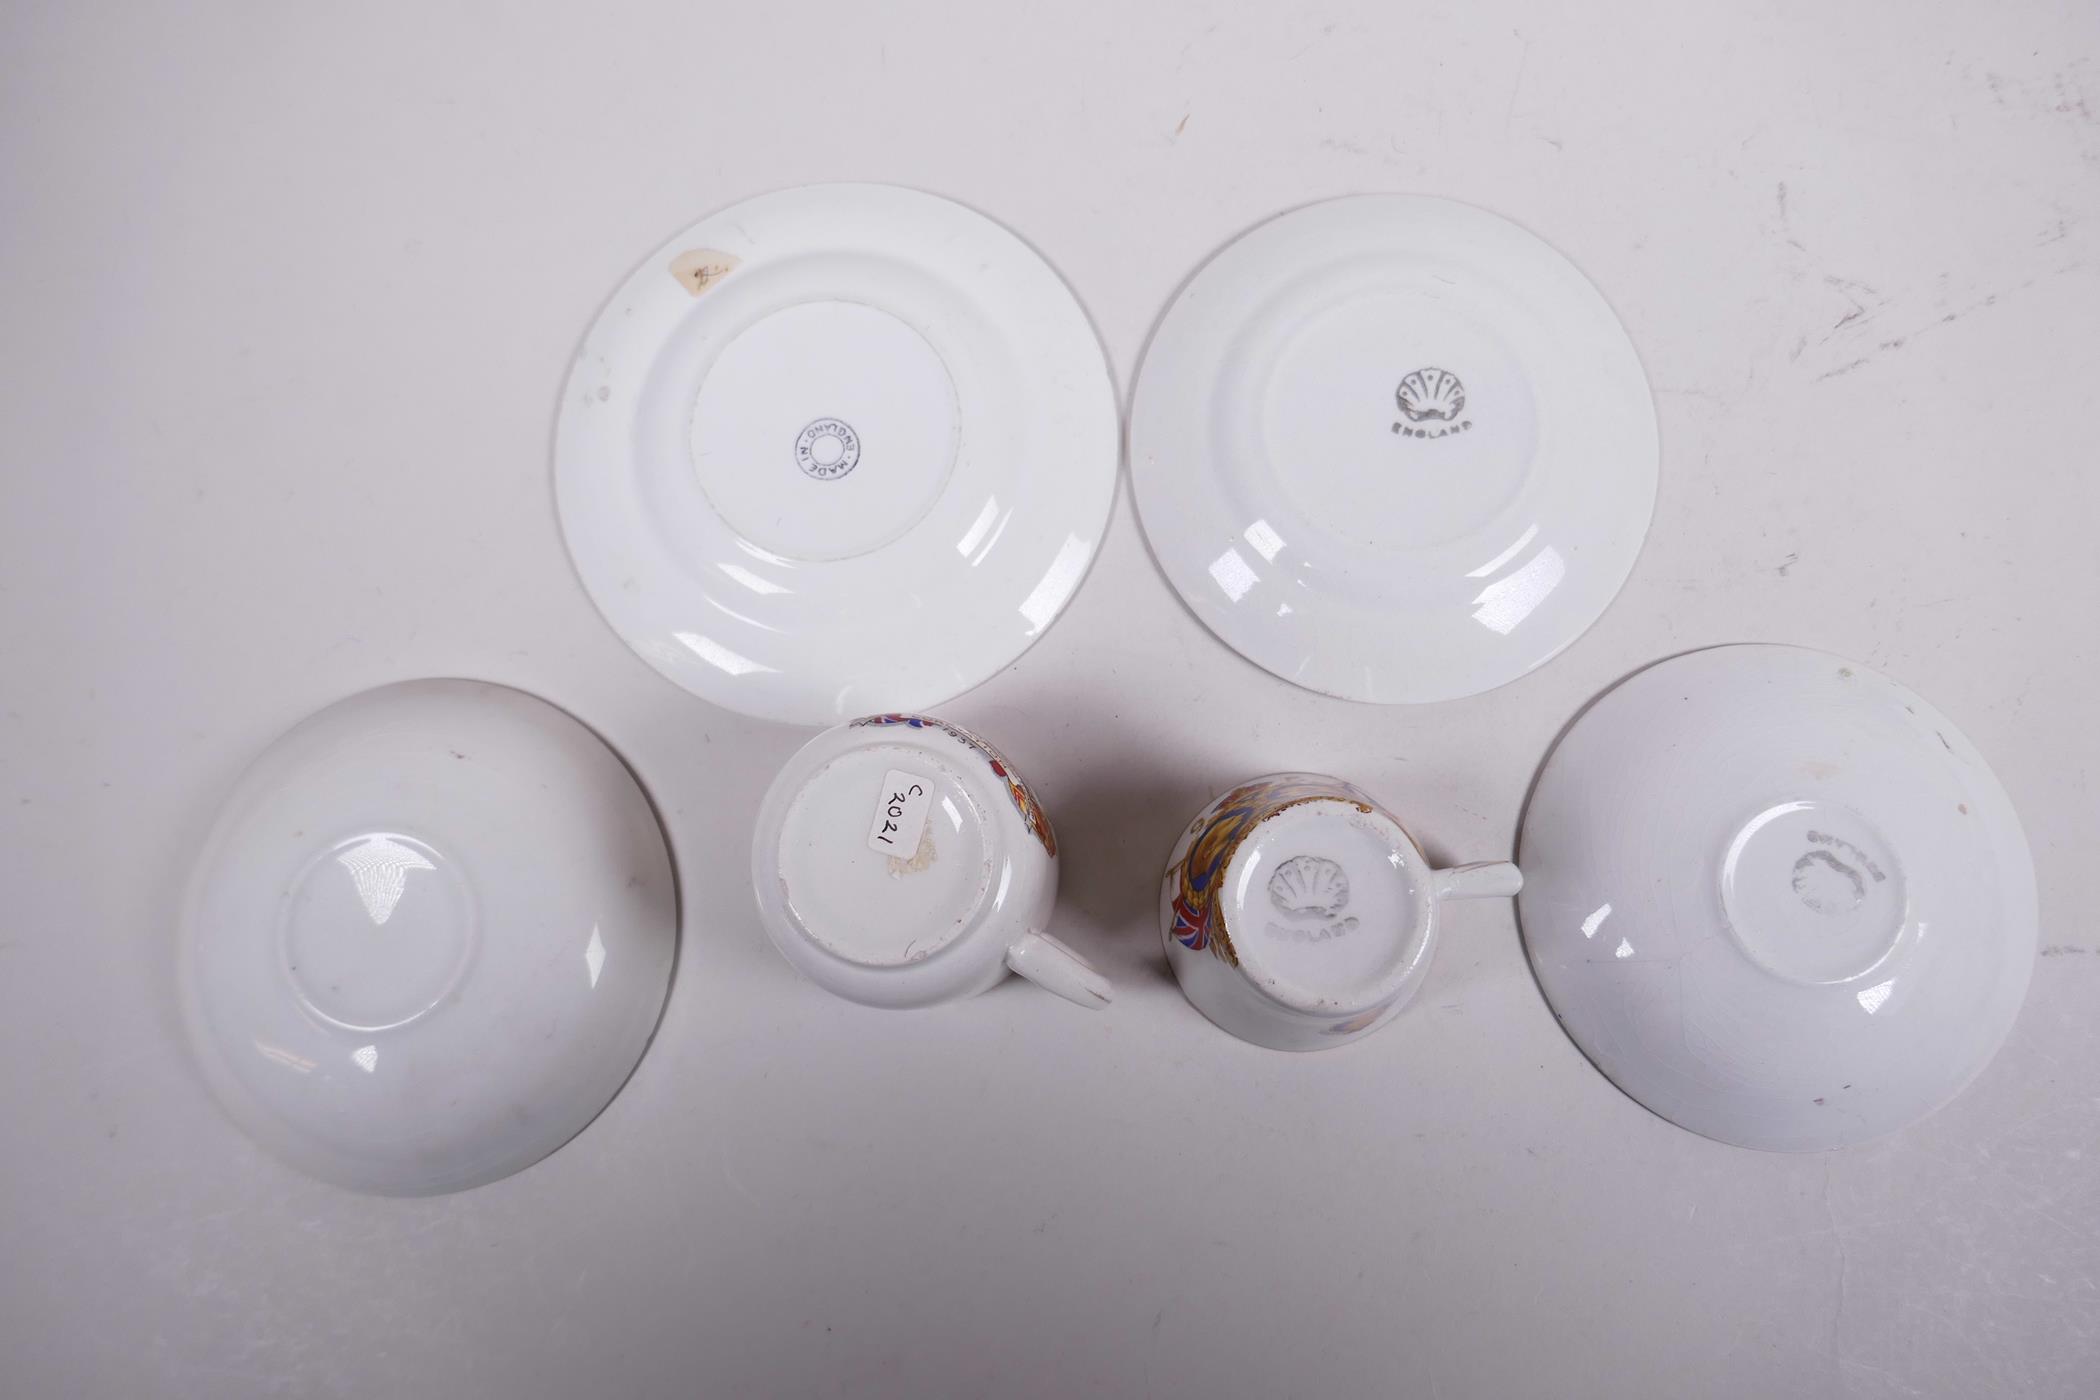 Four 1937 coronation commemorative porcelain eggcups; two miniature porcelain teacup trios etc - Image 5 of 15